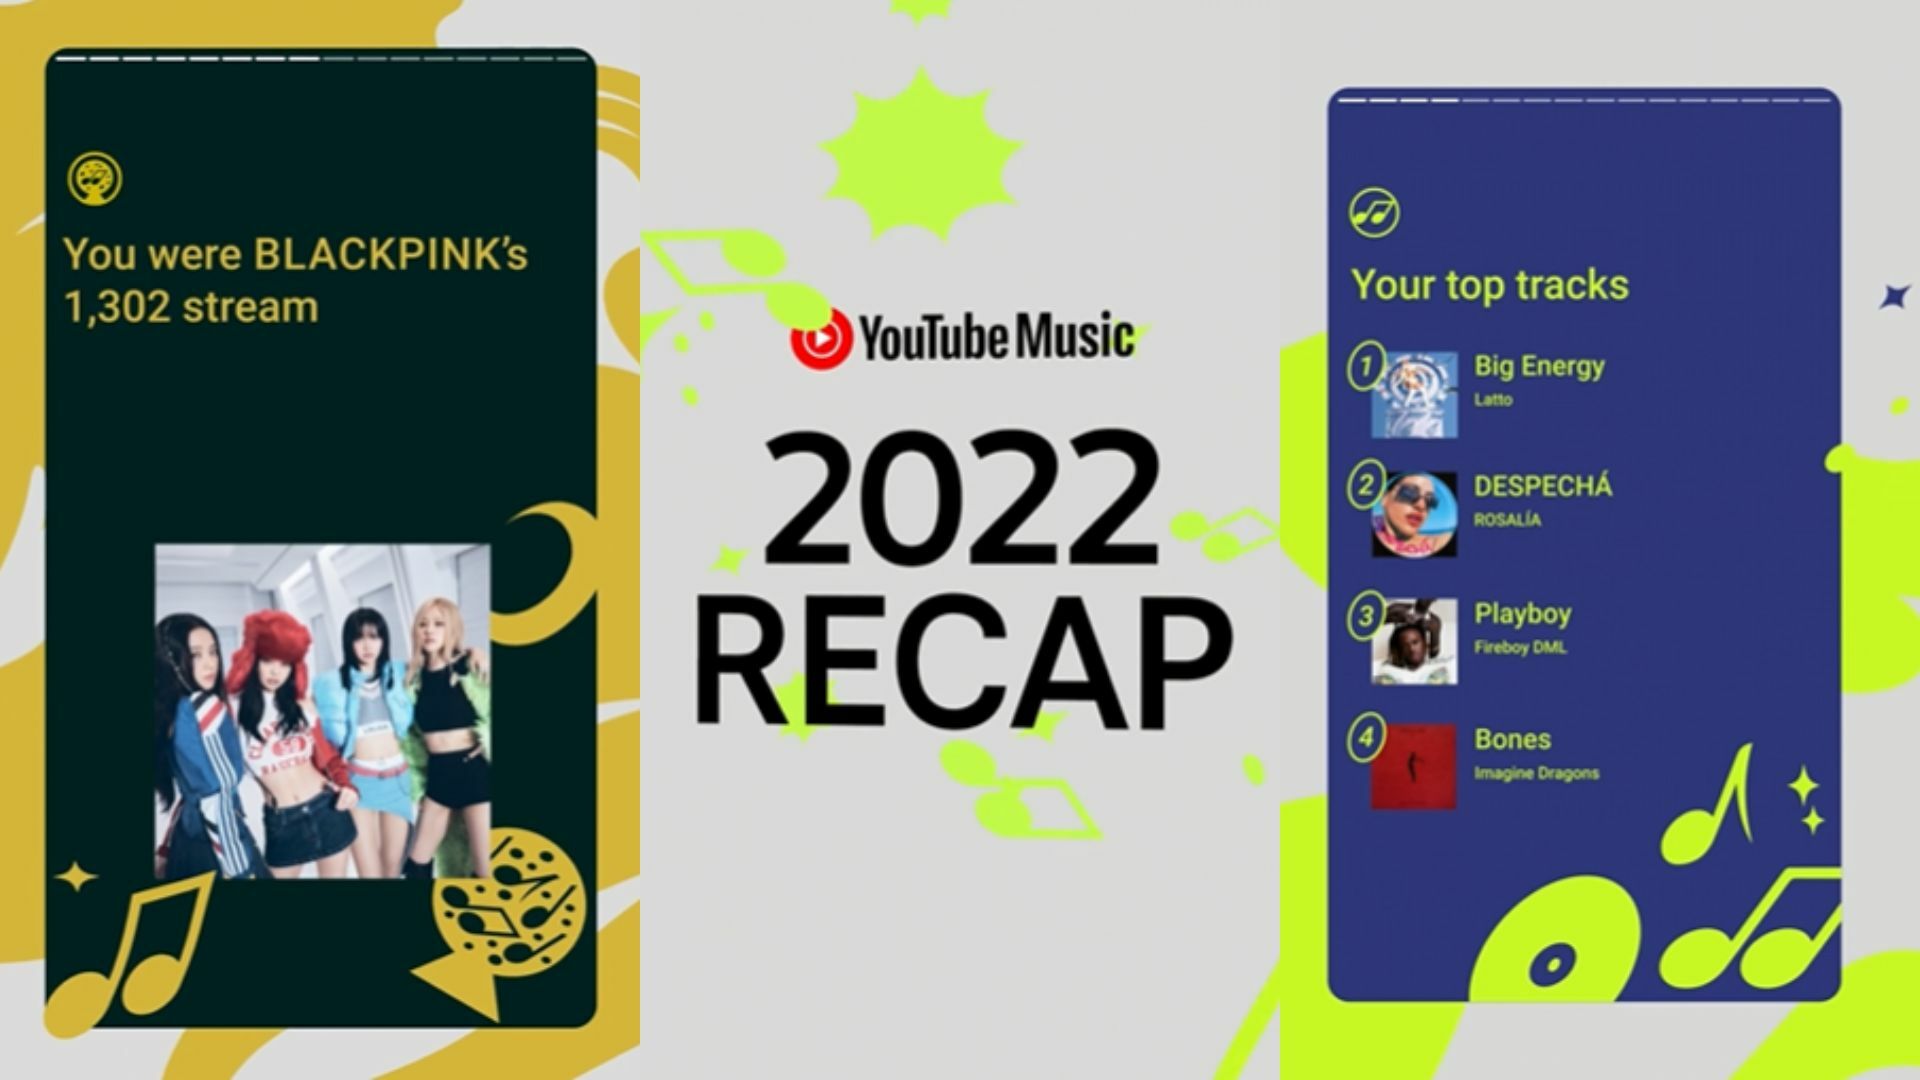 ¿Escuchas música en YouTube? Ya puedes repasar tu 2022 con Music Recap